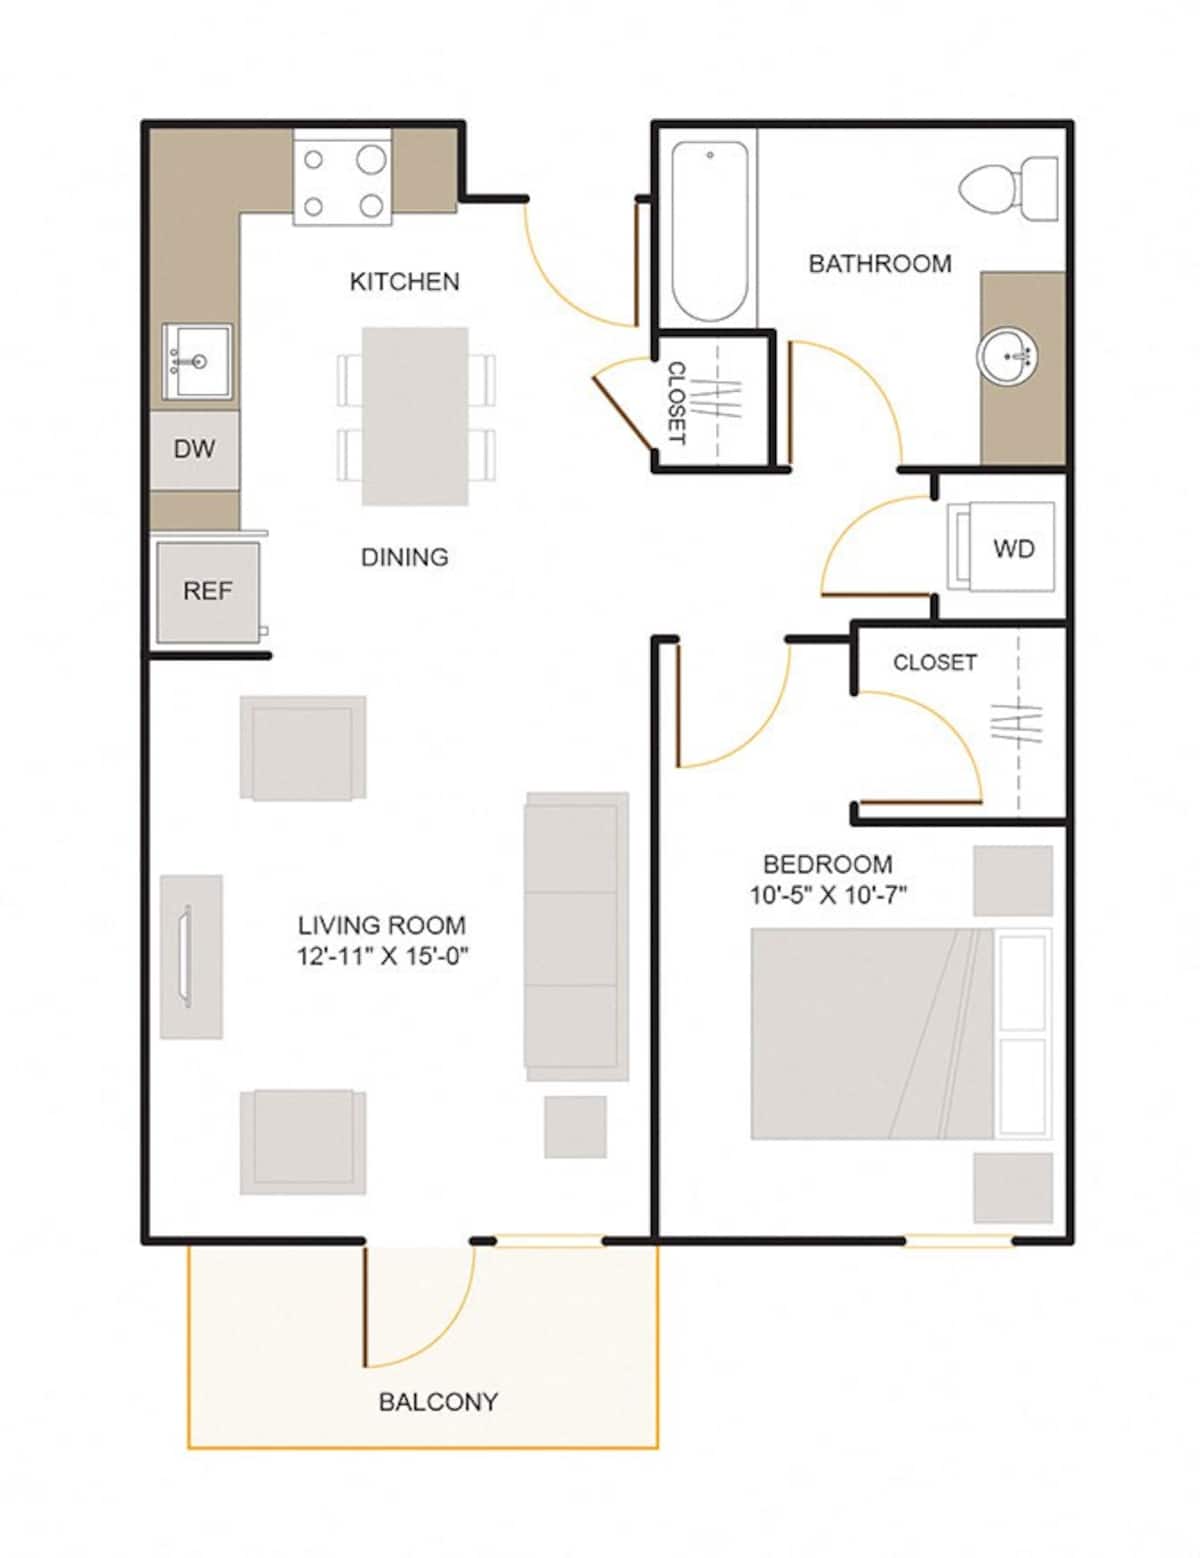 Floorplan diagram for B2.1 (1x1), showing 1 bedroom